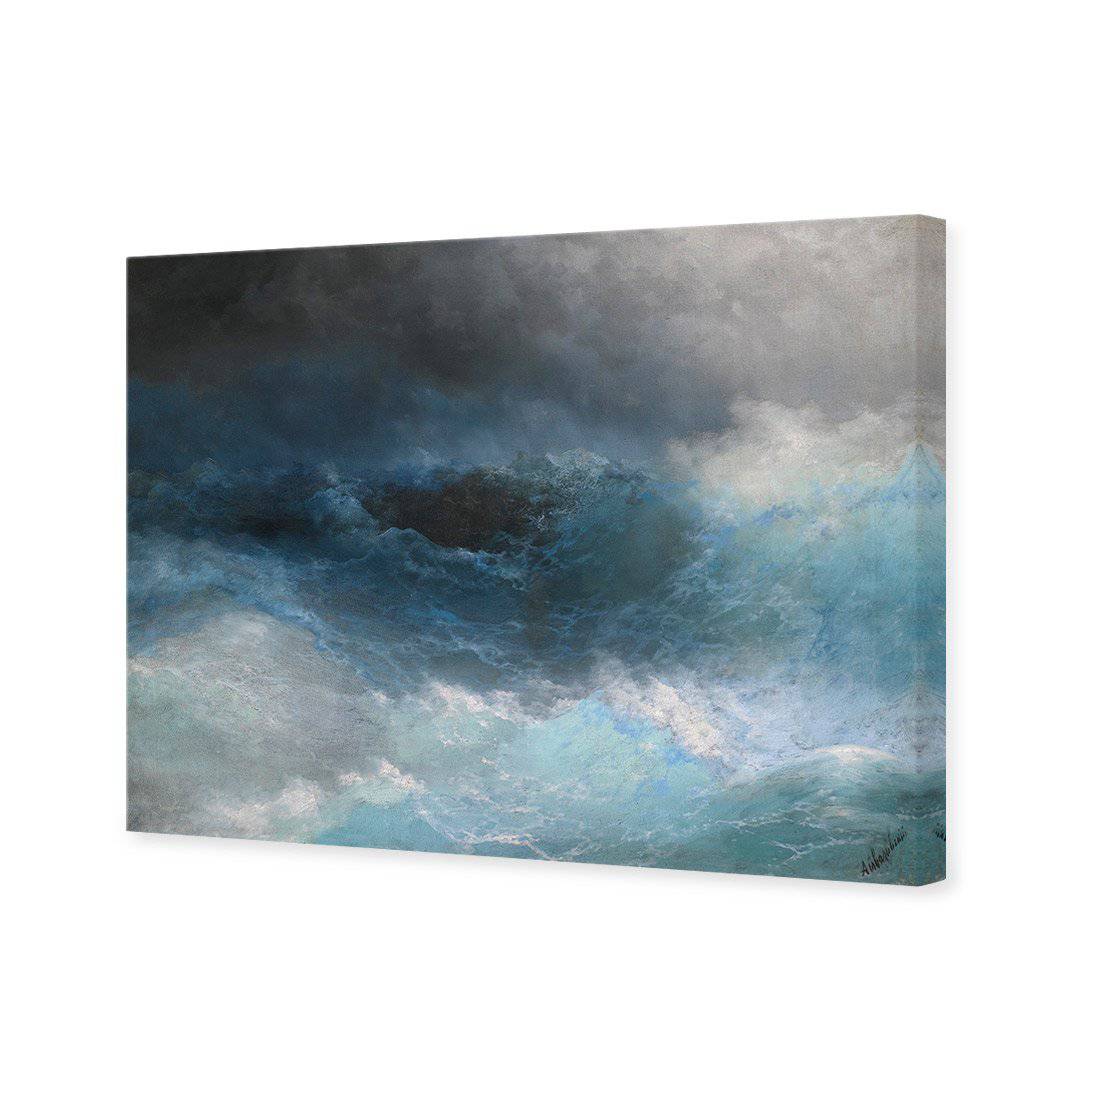 Tempest - Ivan Aivazovsky Canvas Art-Canvas-Wall Art Designs-45x30cm-Canvas - No Frame-Wall Art Designs